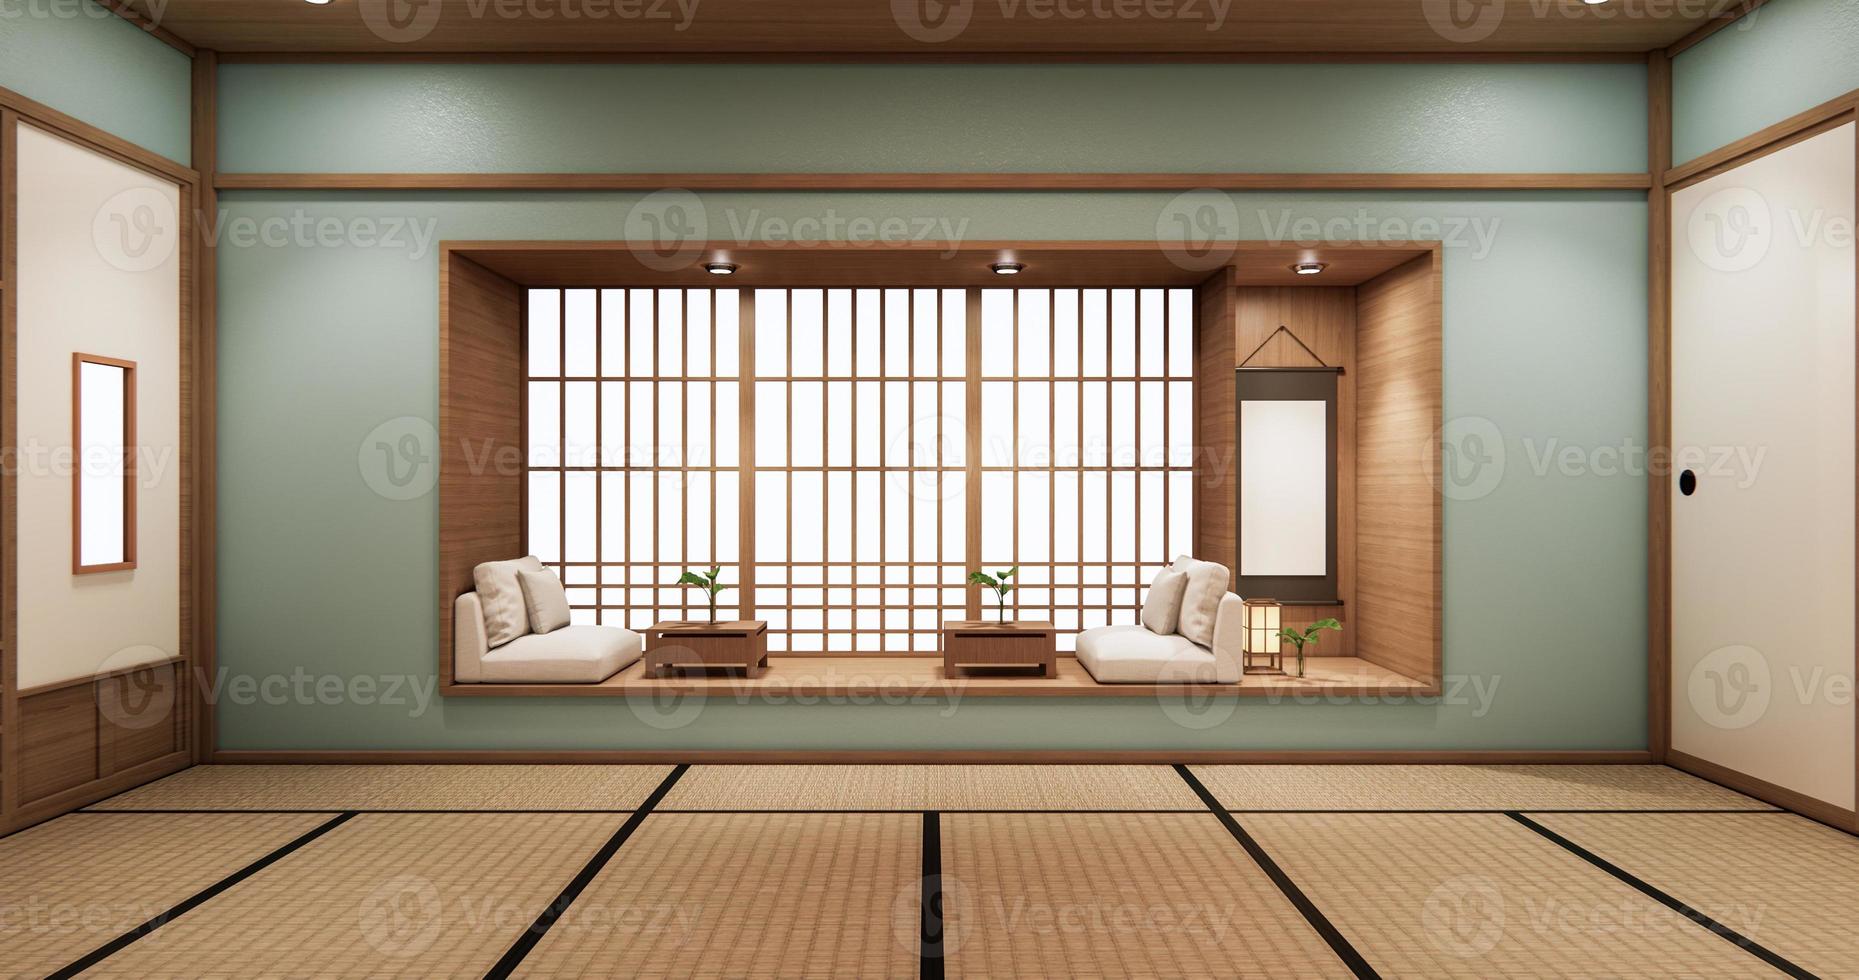 Cyan Living Regal Design im Zimmer im japanischen Stil minimalistisches Design. 3D-Rendering foto